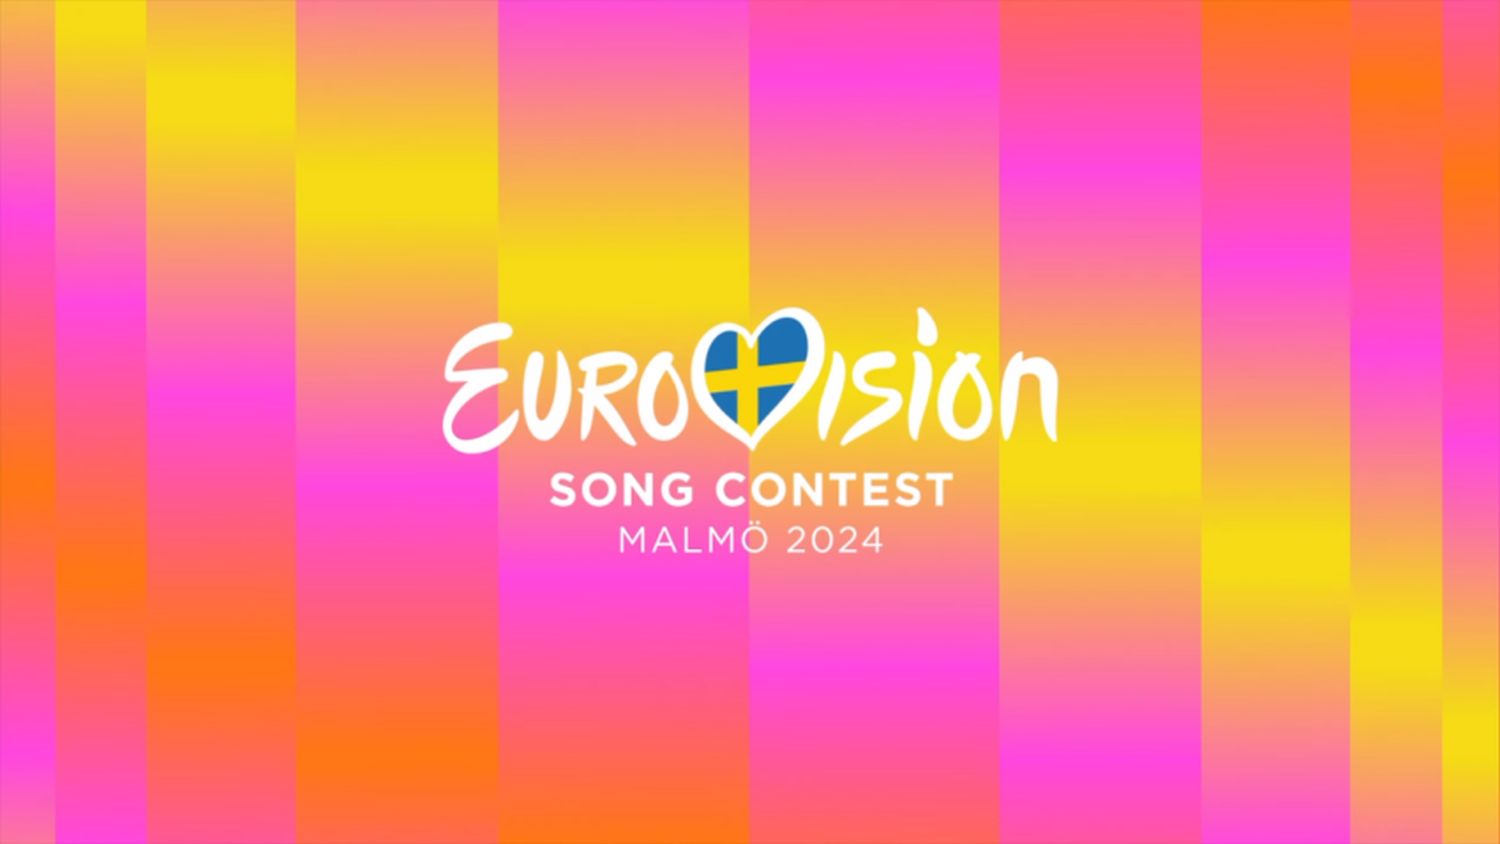 eurovision song contest esc 2024